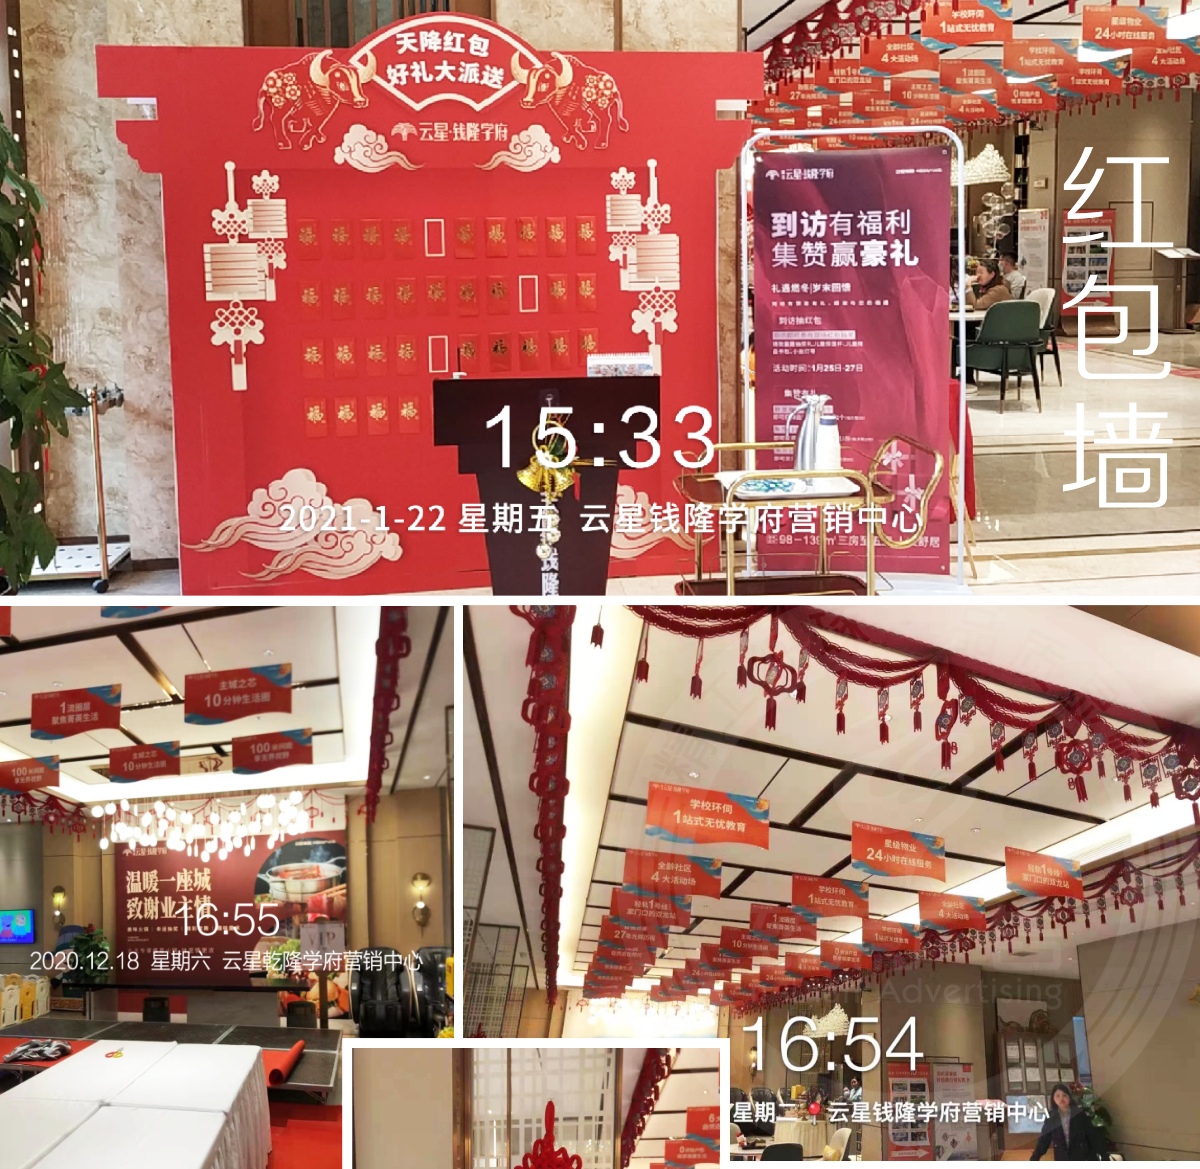 柳州云星钱隆学府营销中心广告策划设计制作红包墙,造型拱门,新春活动包装_02.png